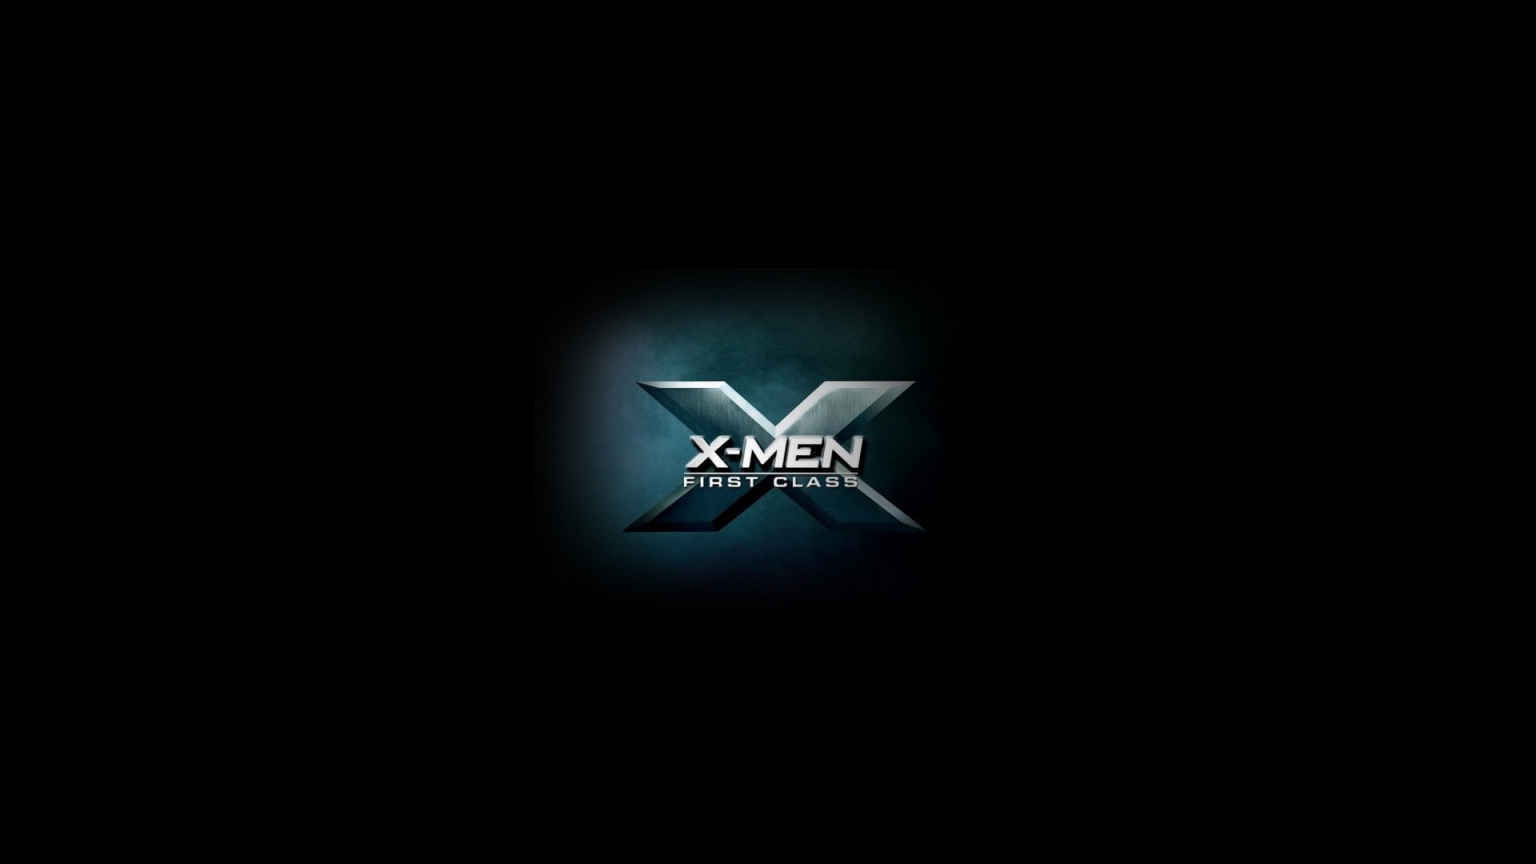 X Men First Class 2011 for 1536 x 864 HDTV resolution